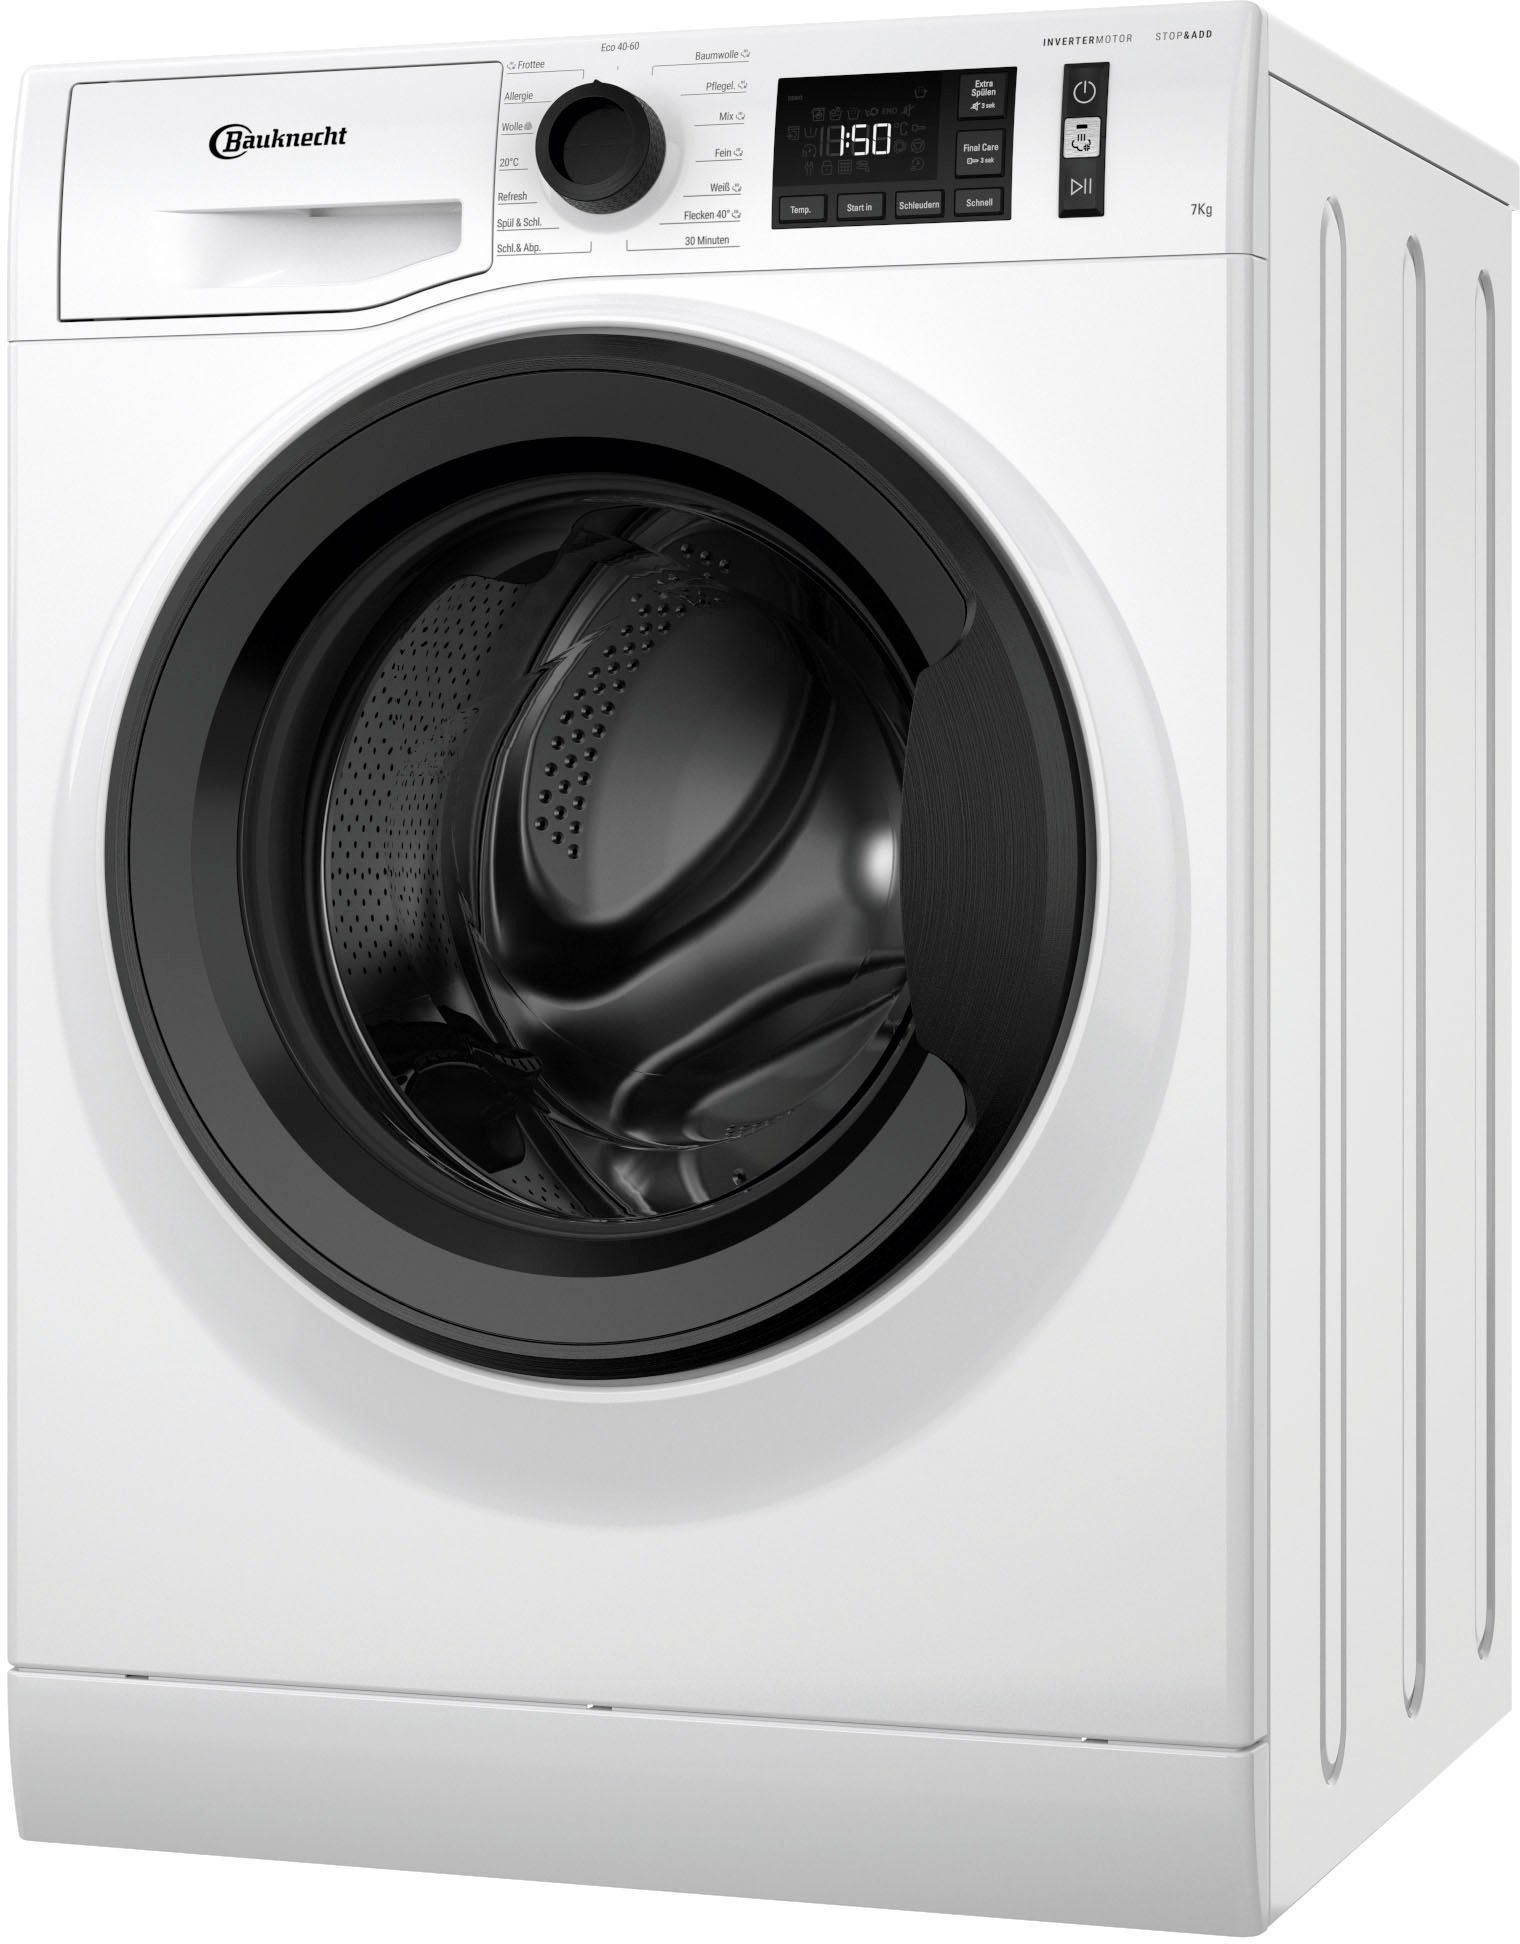 BAUKNECHT Waschmaschine WM Elite 711 CC, 7 kg, 1400 U/min online kaufen |  OTTO